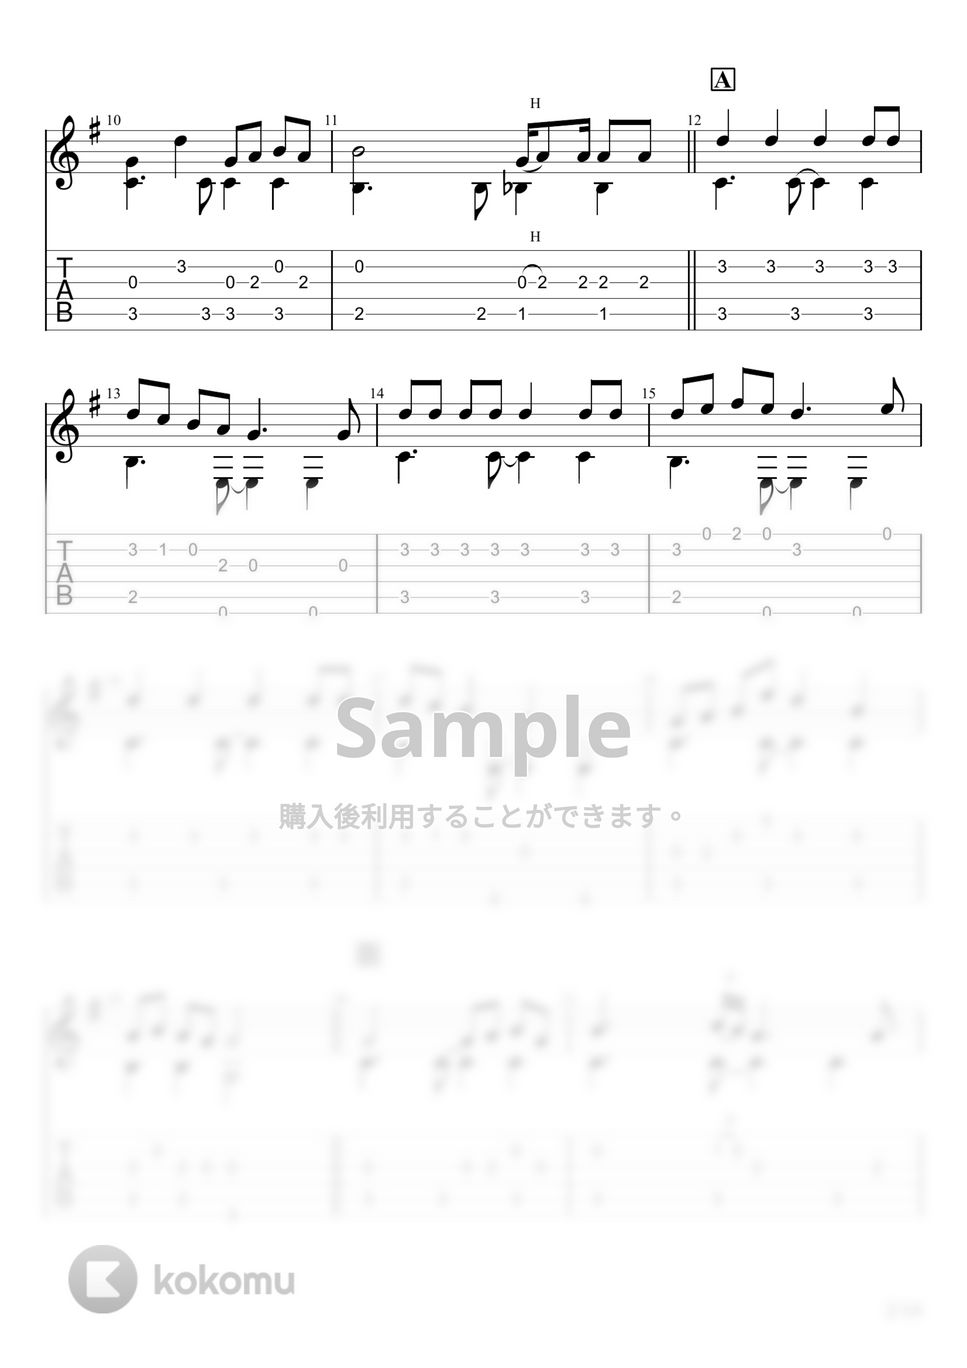 みきとP - 少女レイ (ソロギター) by u3danchou